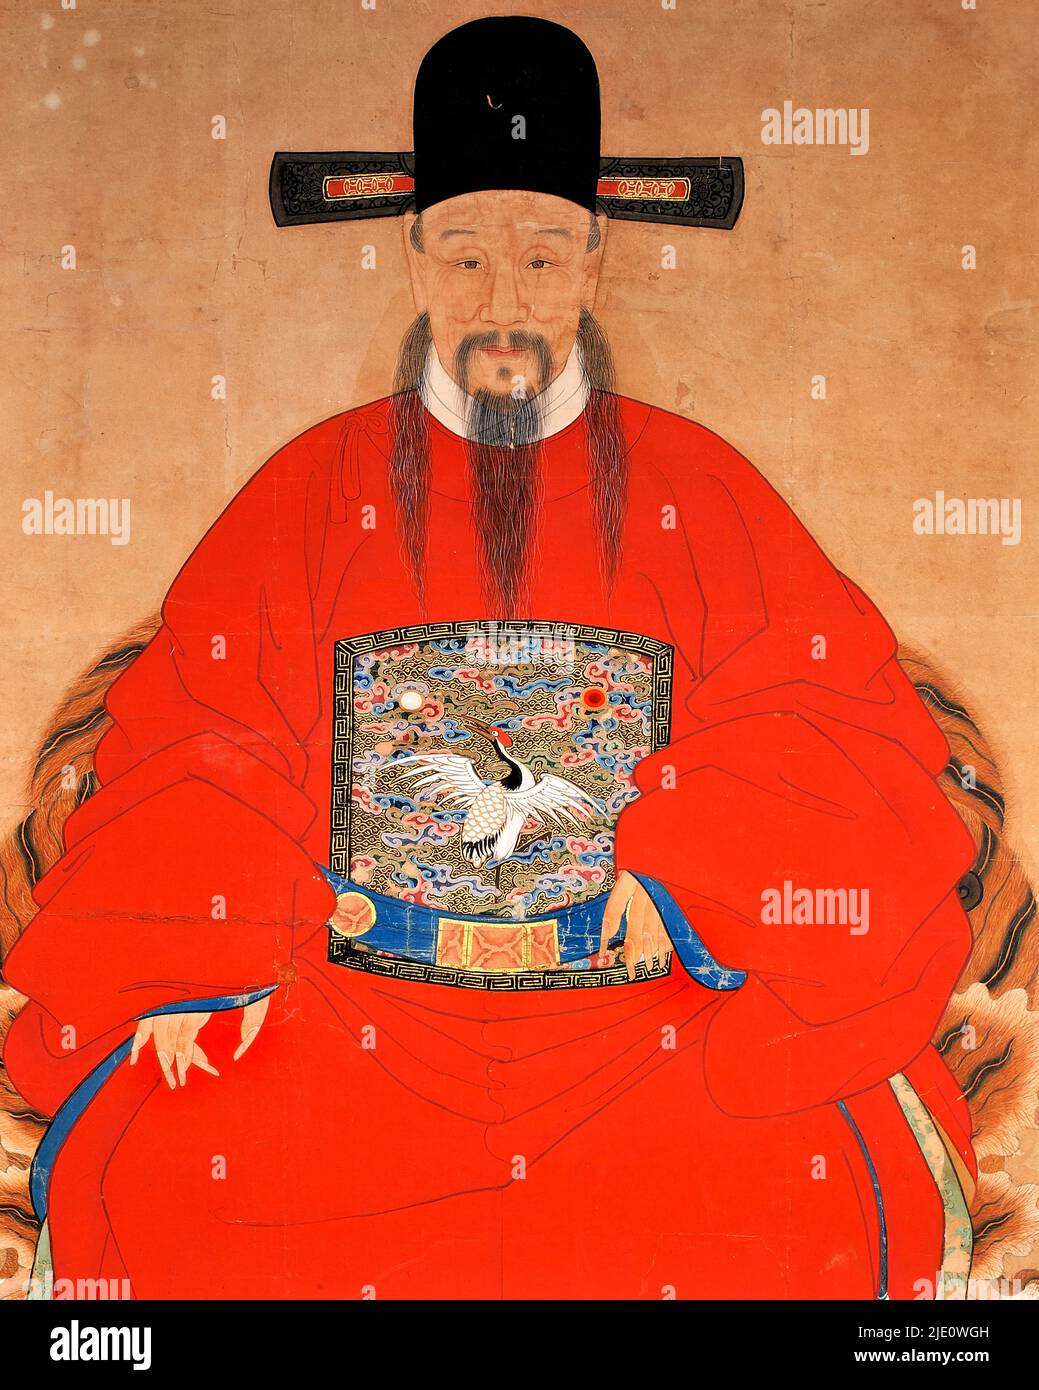 Peinture chinoise ancienne, portrait d'un dignitaire chinois, tempera sur toile, période Qing 1644-1911. Banque D'Images